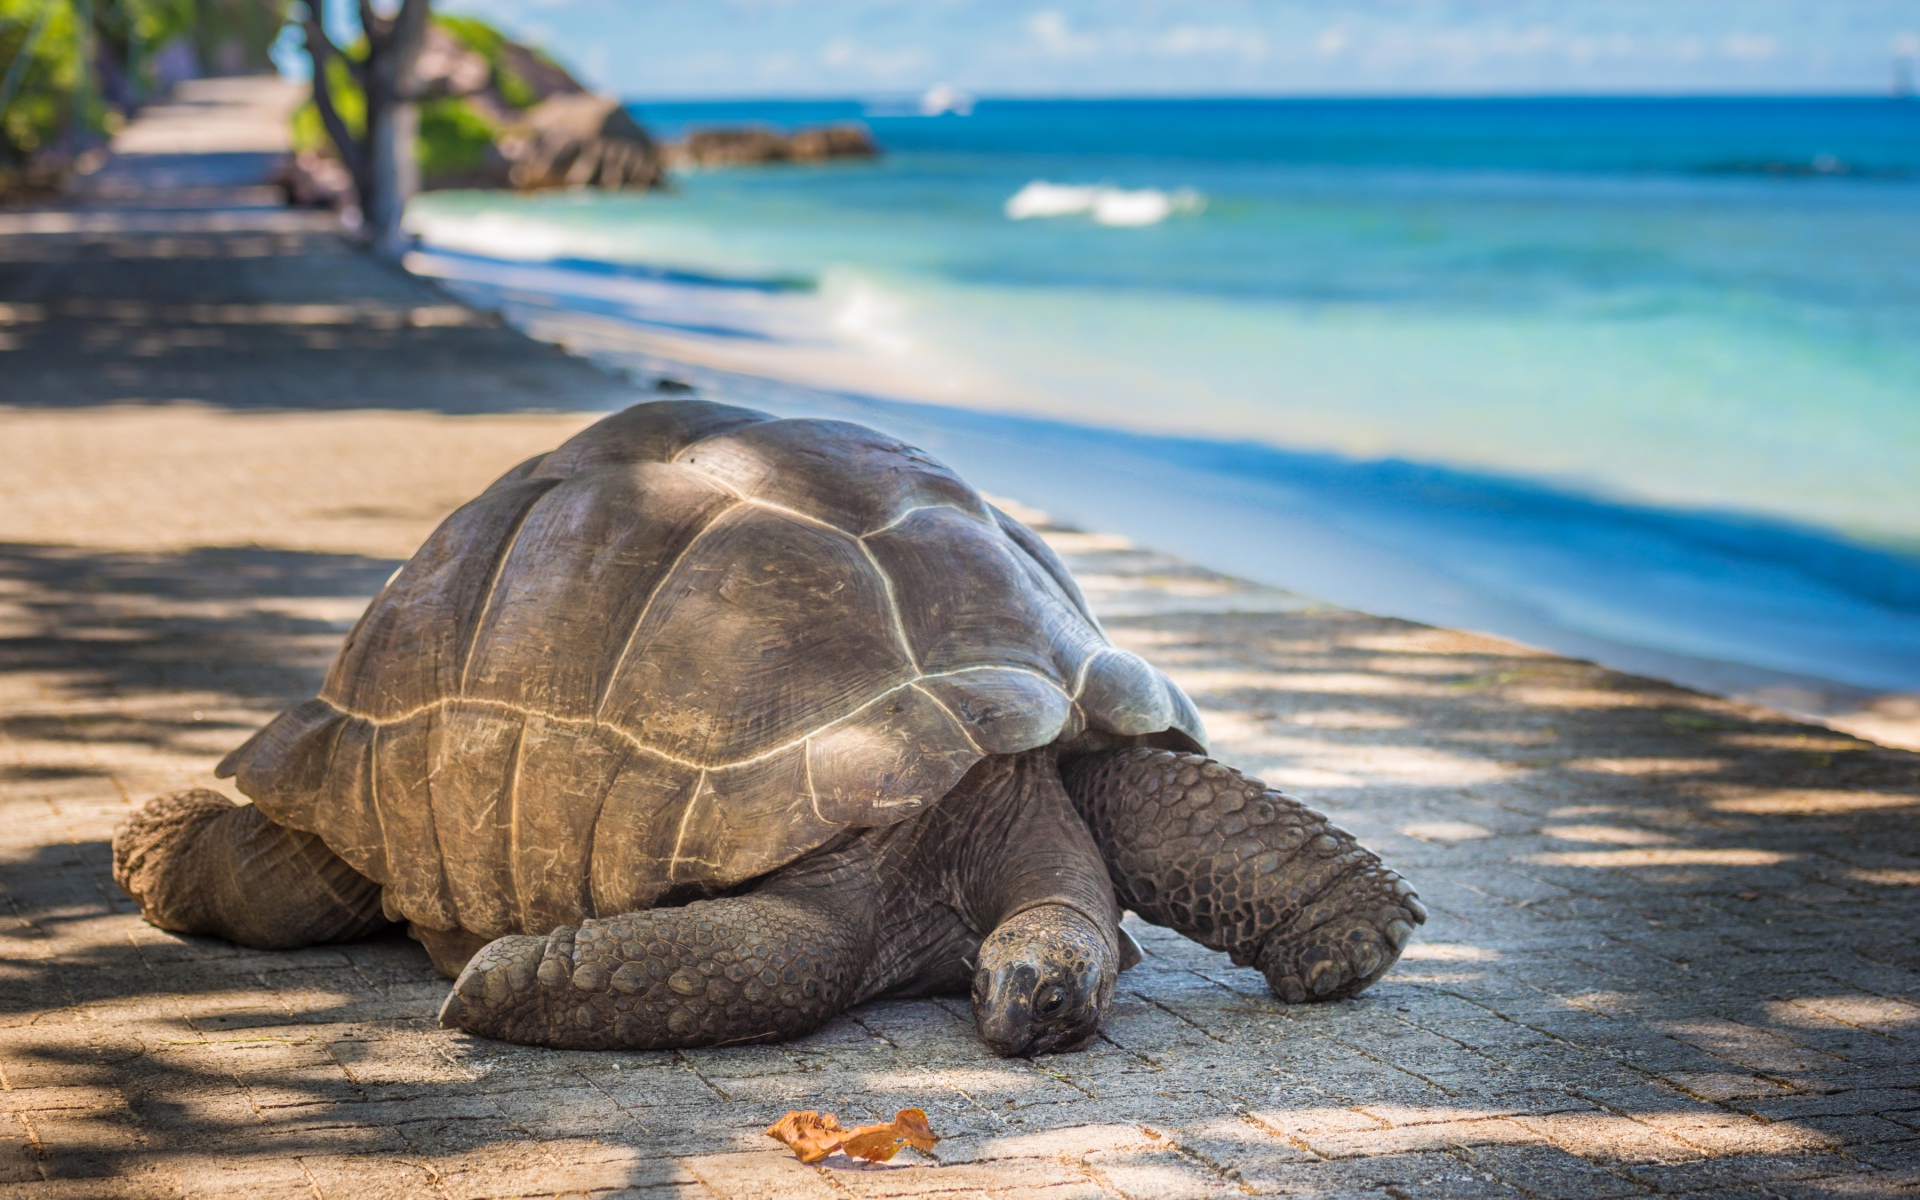 Giant tortoise on the shore